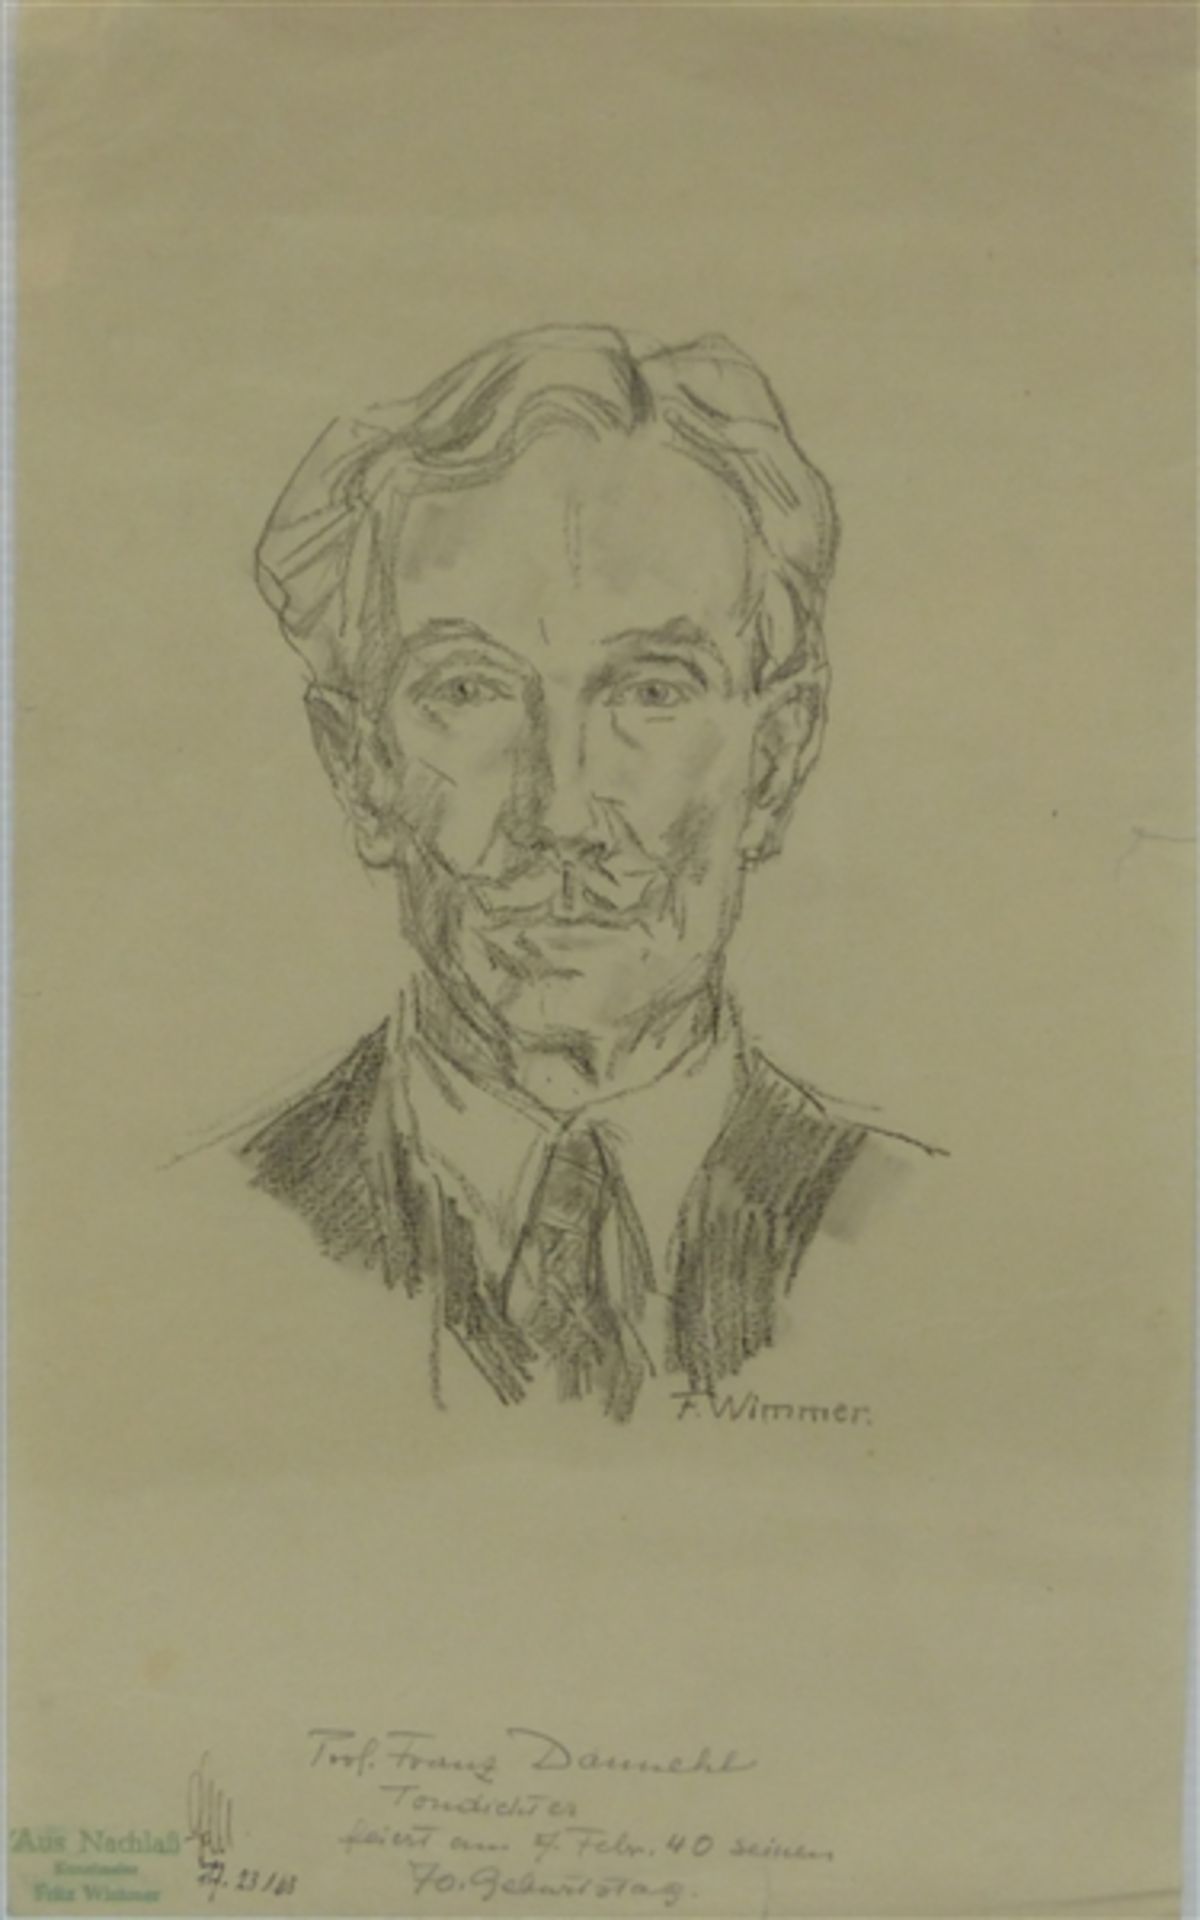 Wimmer, Fritz 1879 Rocklitz - 1960 Neuburg, Skizze, "Porträt des Prof. Franz Dannehl", signiert, mit